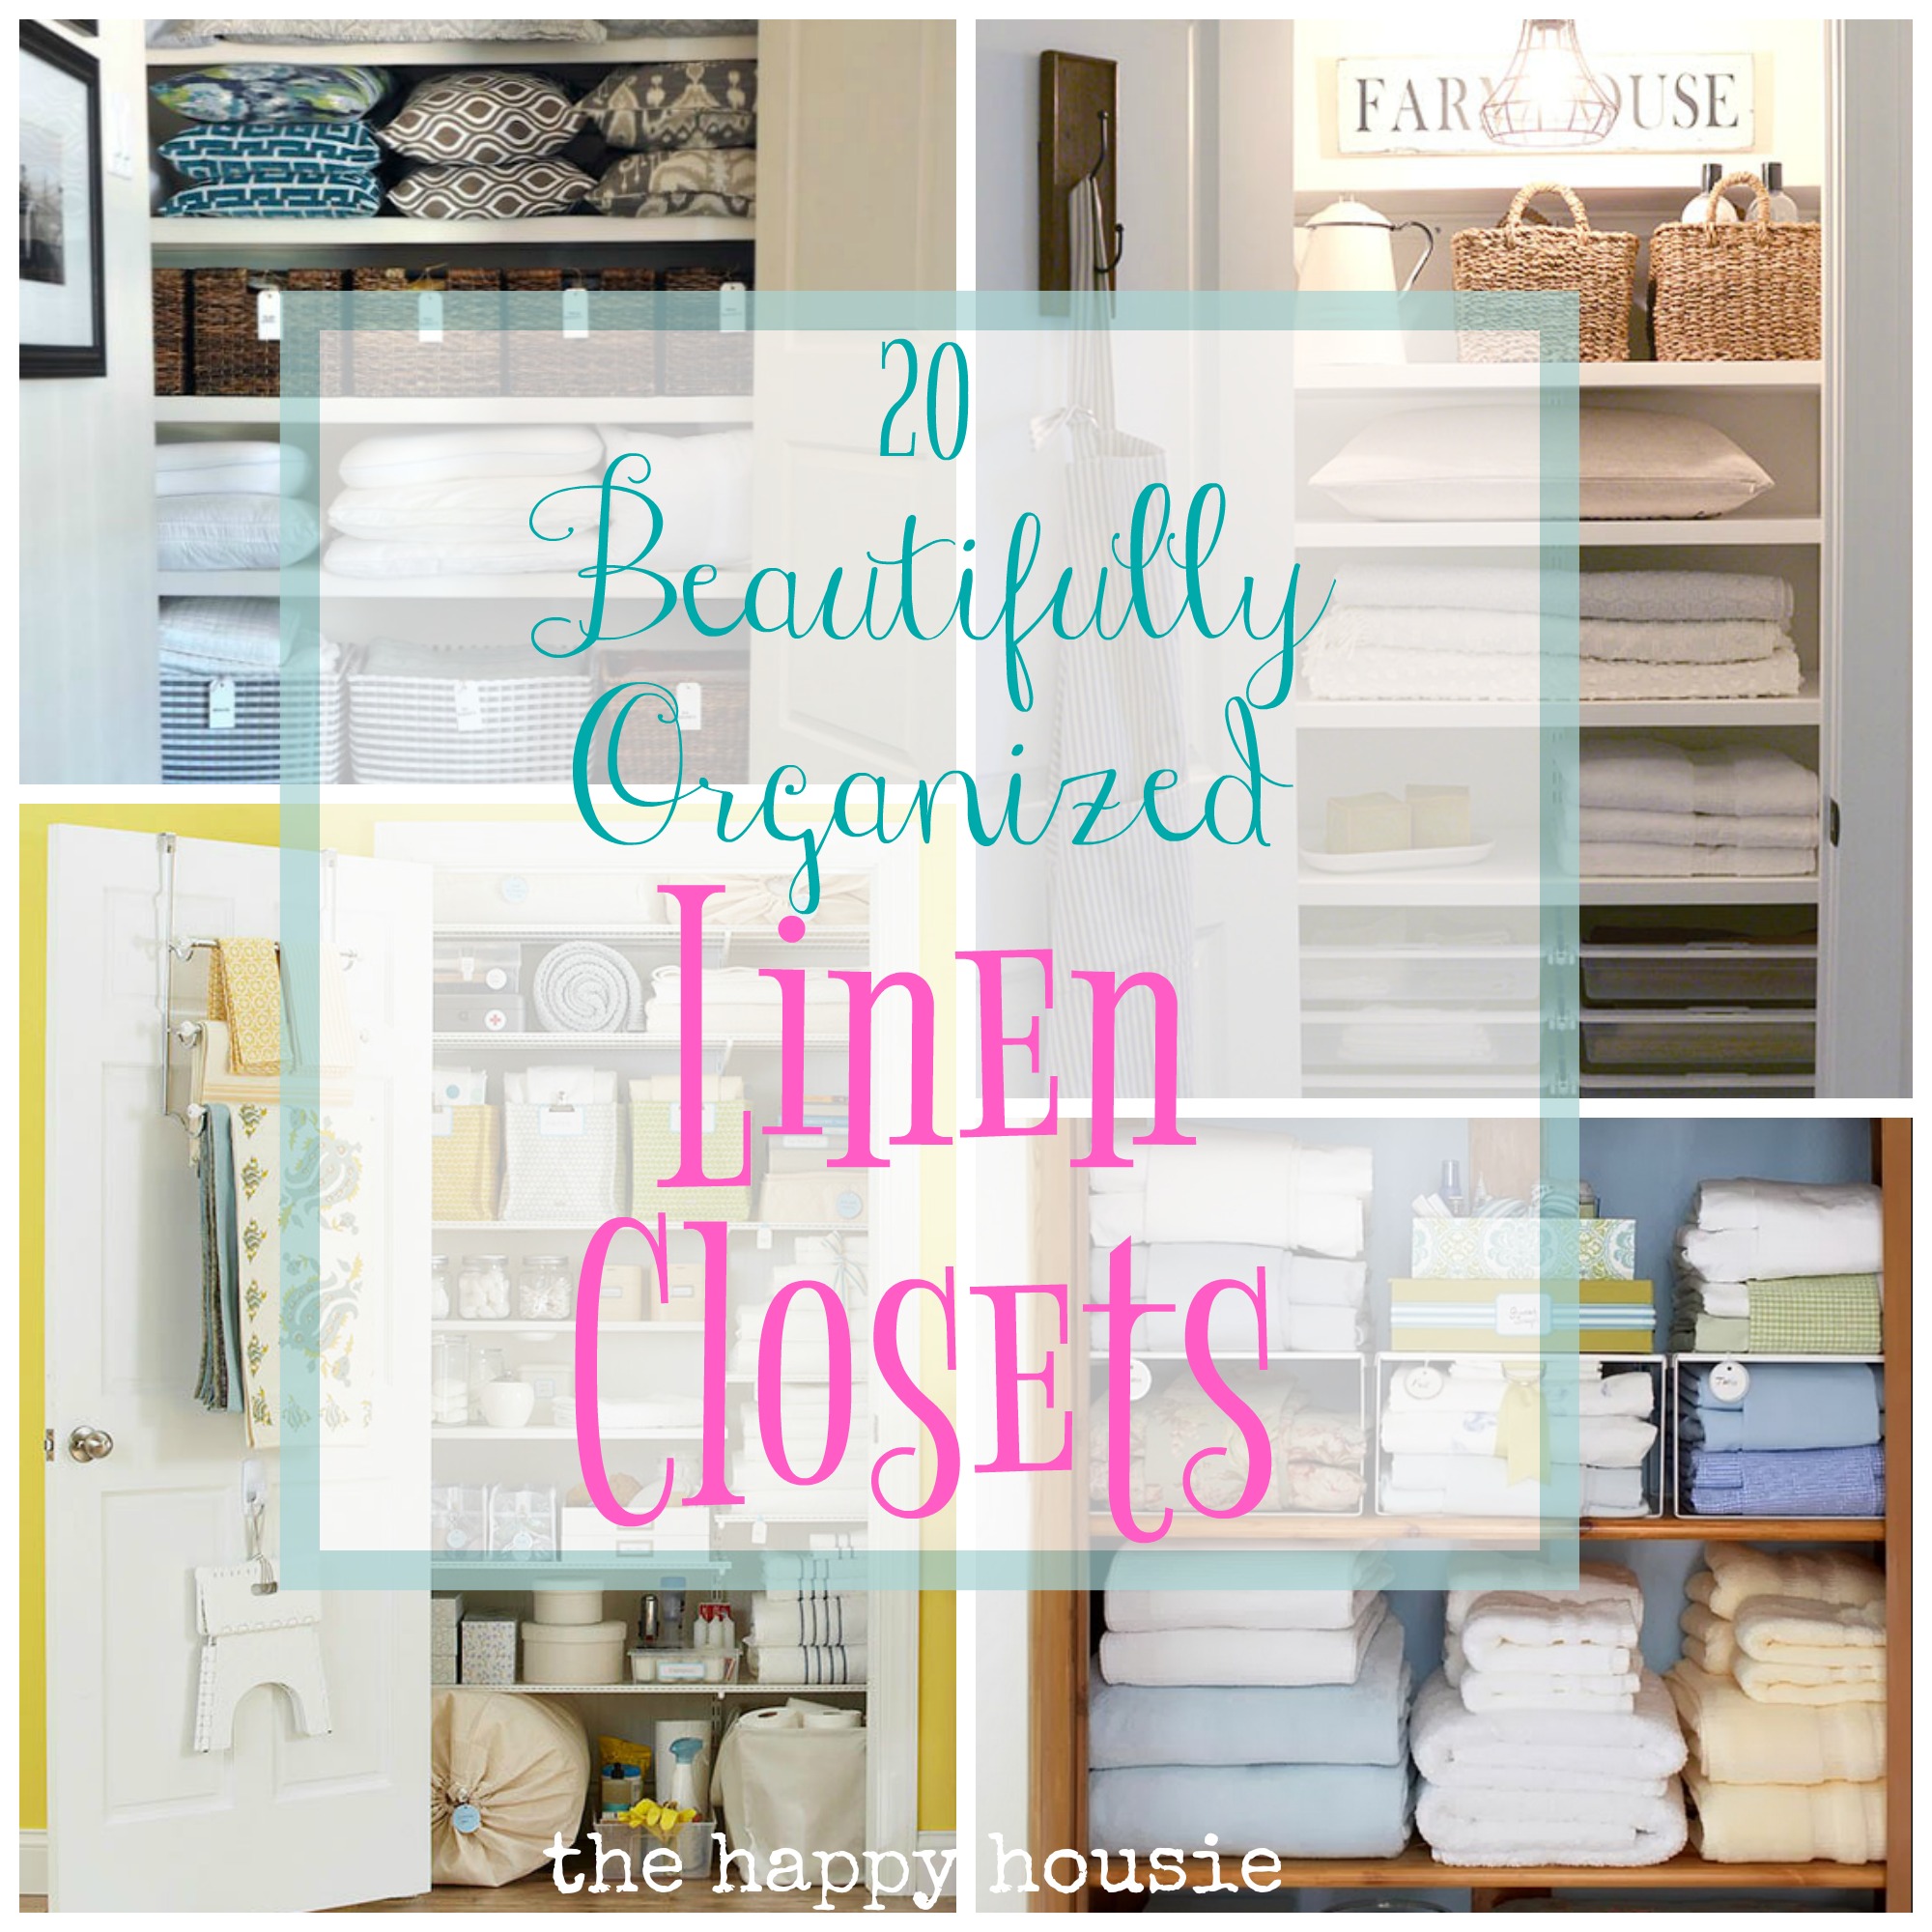 How to Organize a Linen Closet — LIVEN DESIGN